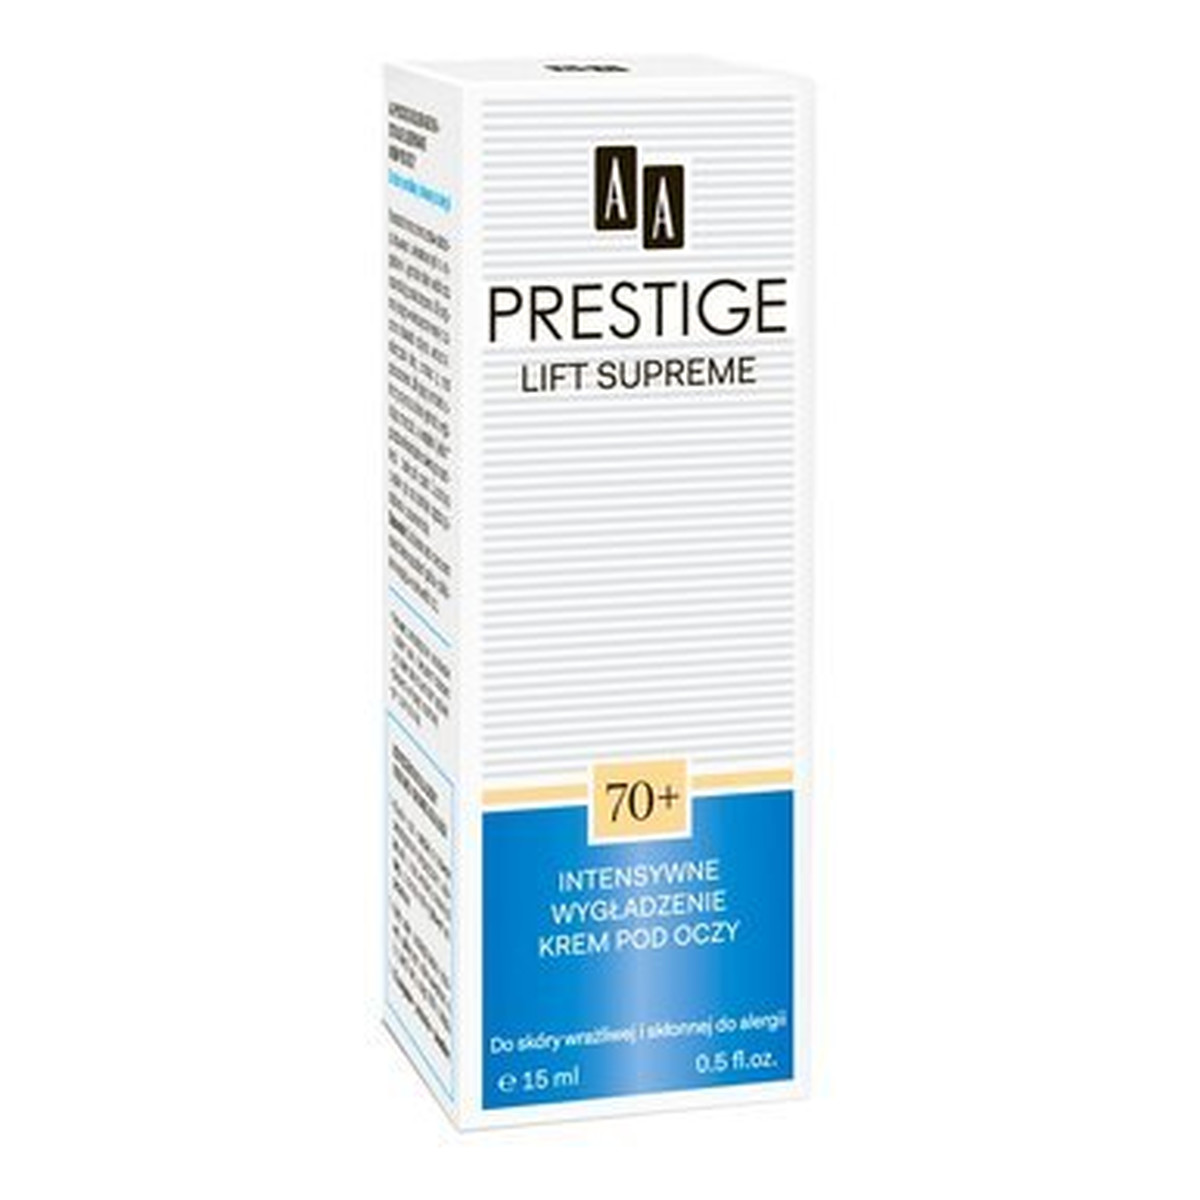 AA Prestige Lift Supreme 70+ Intensywne Wygładzenie Krem Pod Oczy 15ml